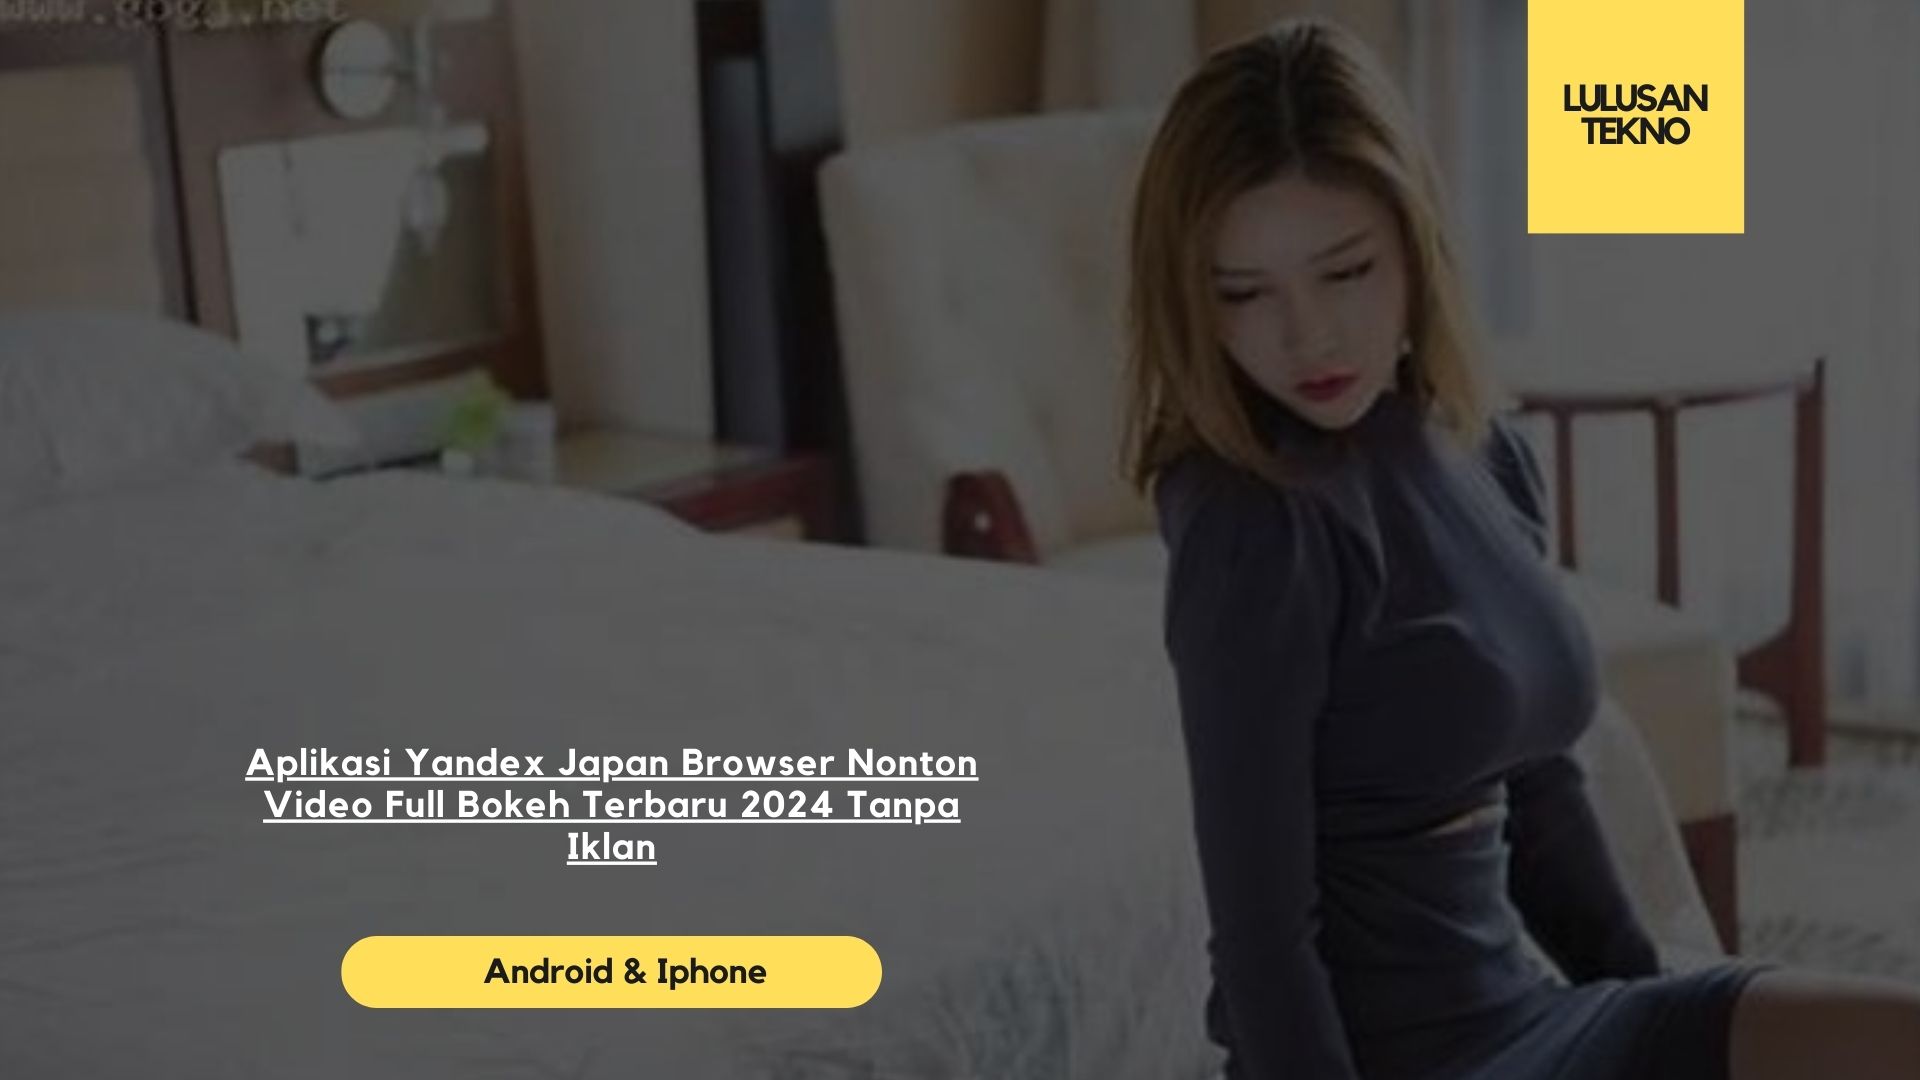 Aplikasi Yandex Japan Browser Nonton Video Full Bokeh Terbaru 2024 Tanpa Iklan